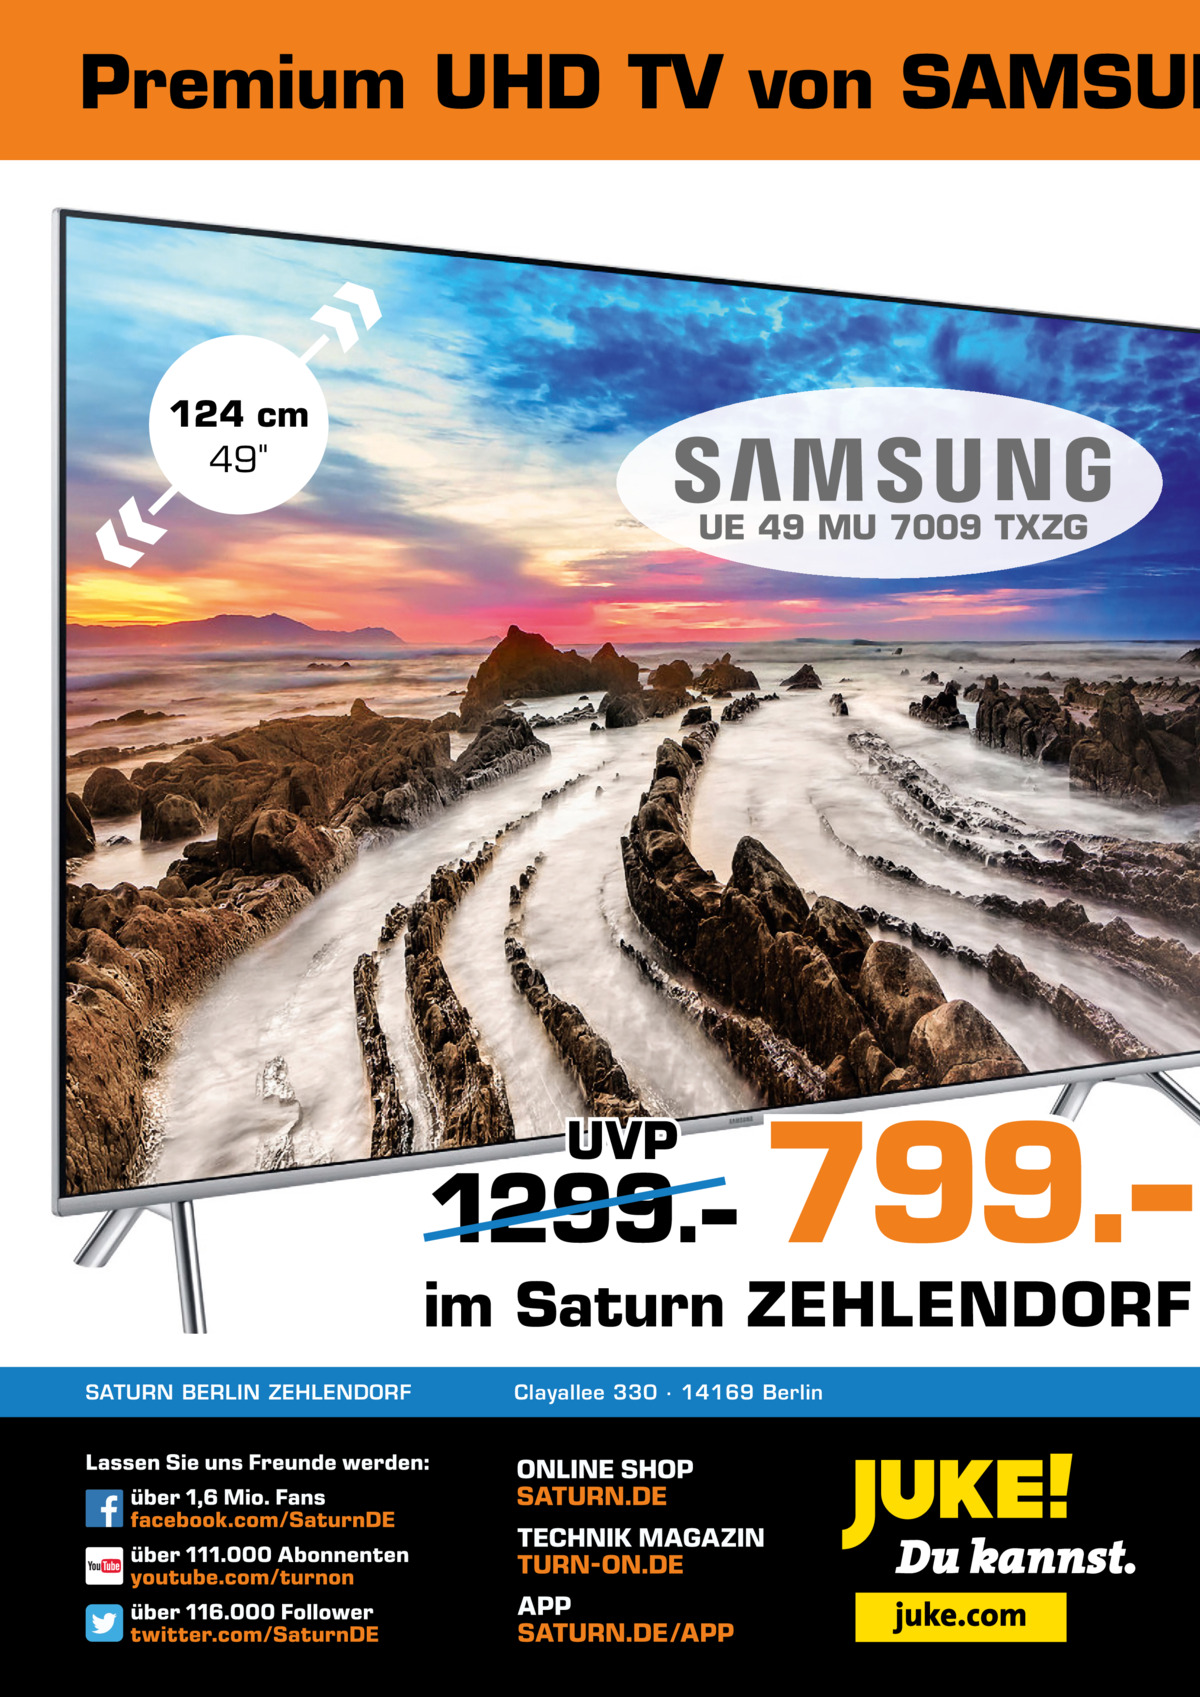 Premium UHD TV von SAMSUN  124 cm 49 UE 49 MU 7009 TXZG  UVP  1299.–  799.–  im Saturn ZEHLENDORF SATURN BERLIN ZEHLENDORF  Clayallee 330 ∙ 14169 Berlin